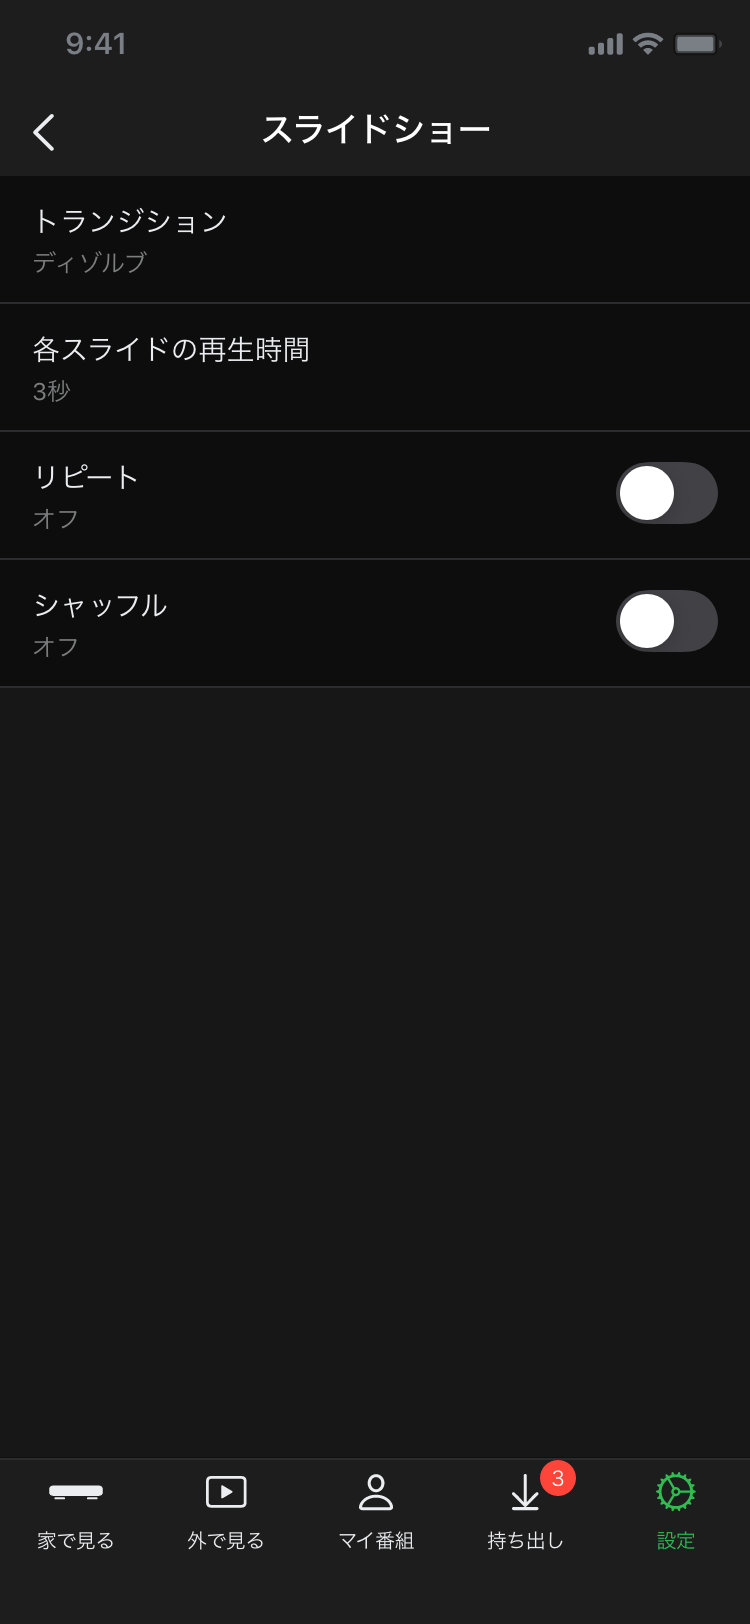 DiXiM Digital TV for iOS 簡単設定スライドショー